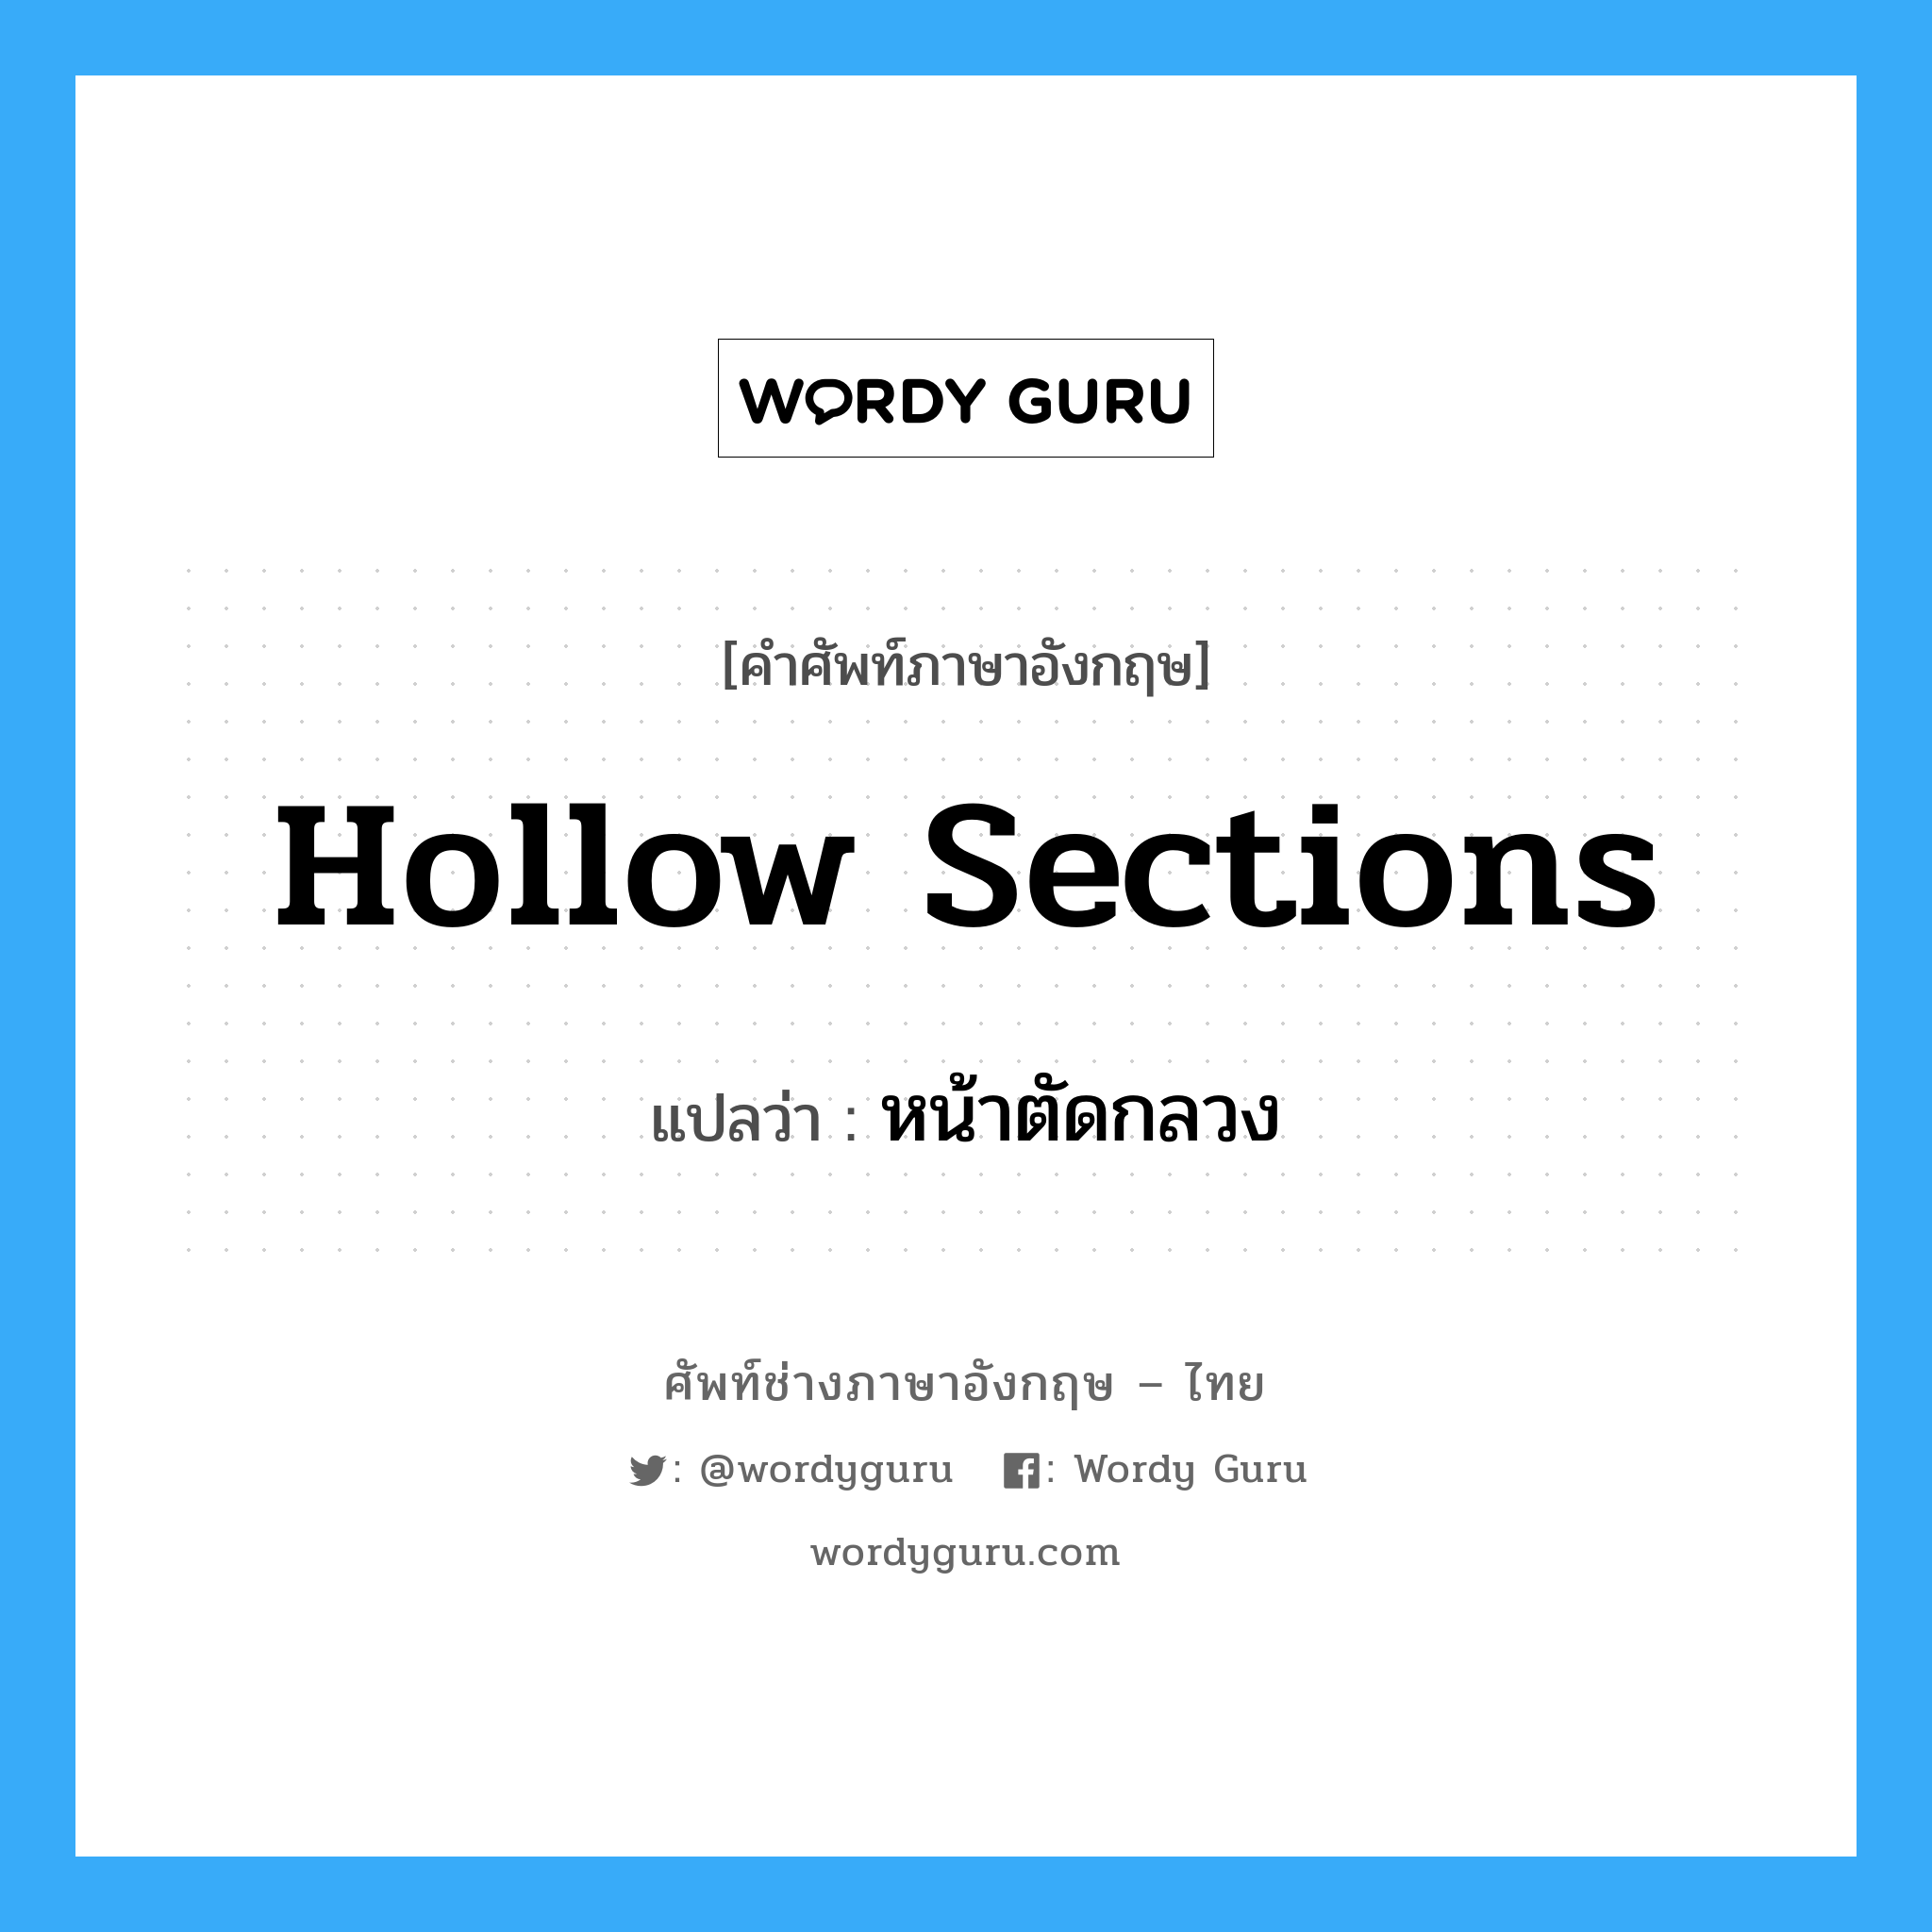 hollow sections แปลว่า?, คำศัพท์ช่างภาษาอังกฤษ - ไทย hollow sections คำศัพท์ภาษาอังกฤษ hollow sections แปลว่า หน้าตัดกลวง